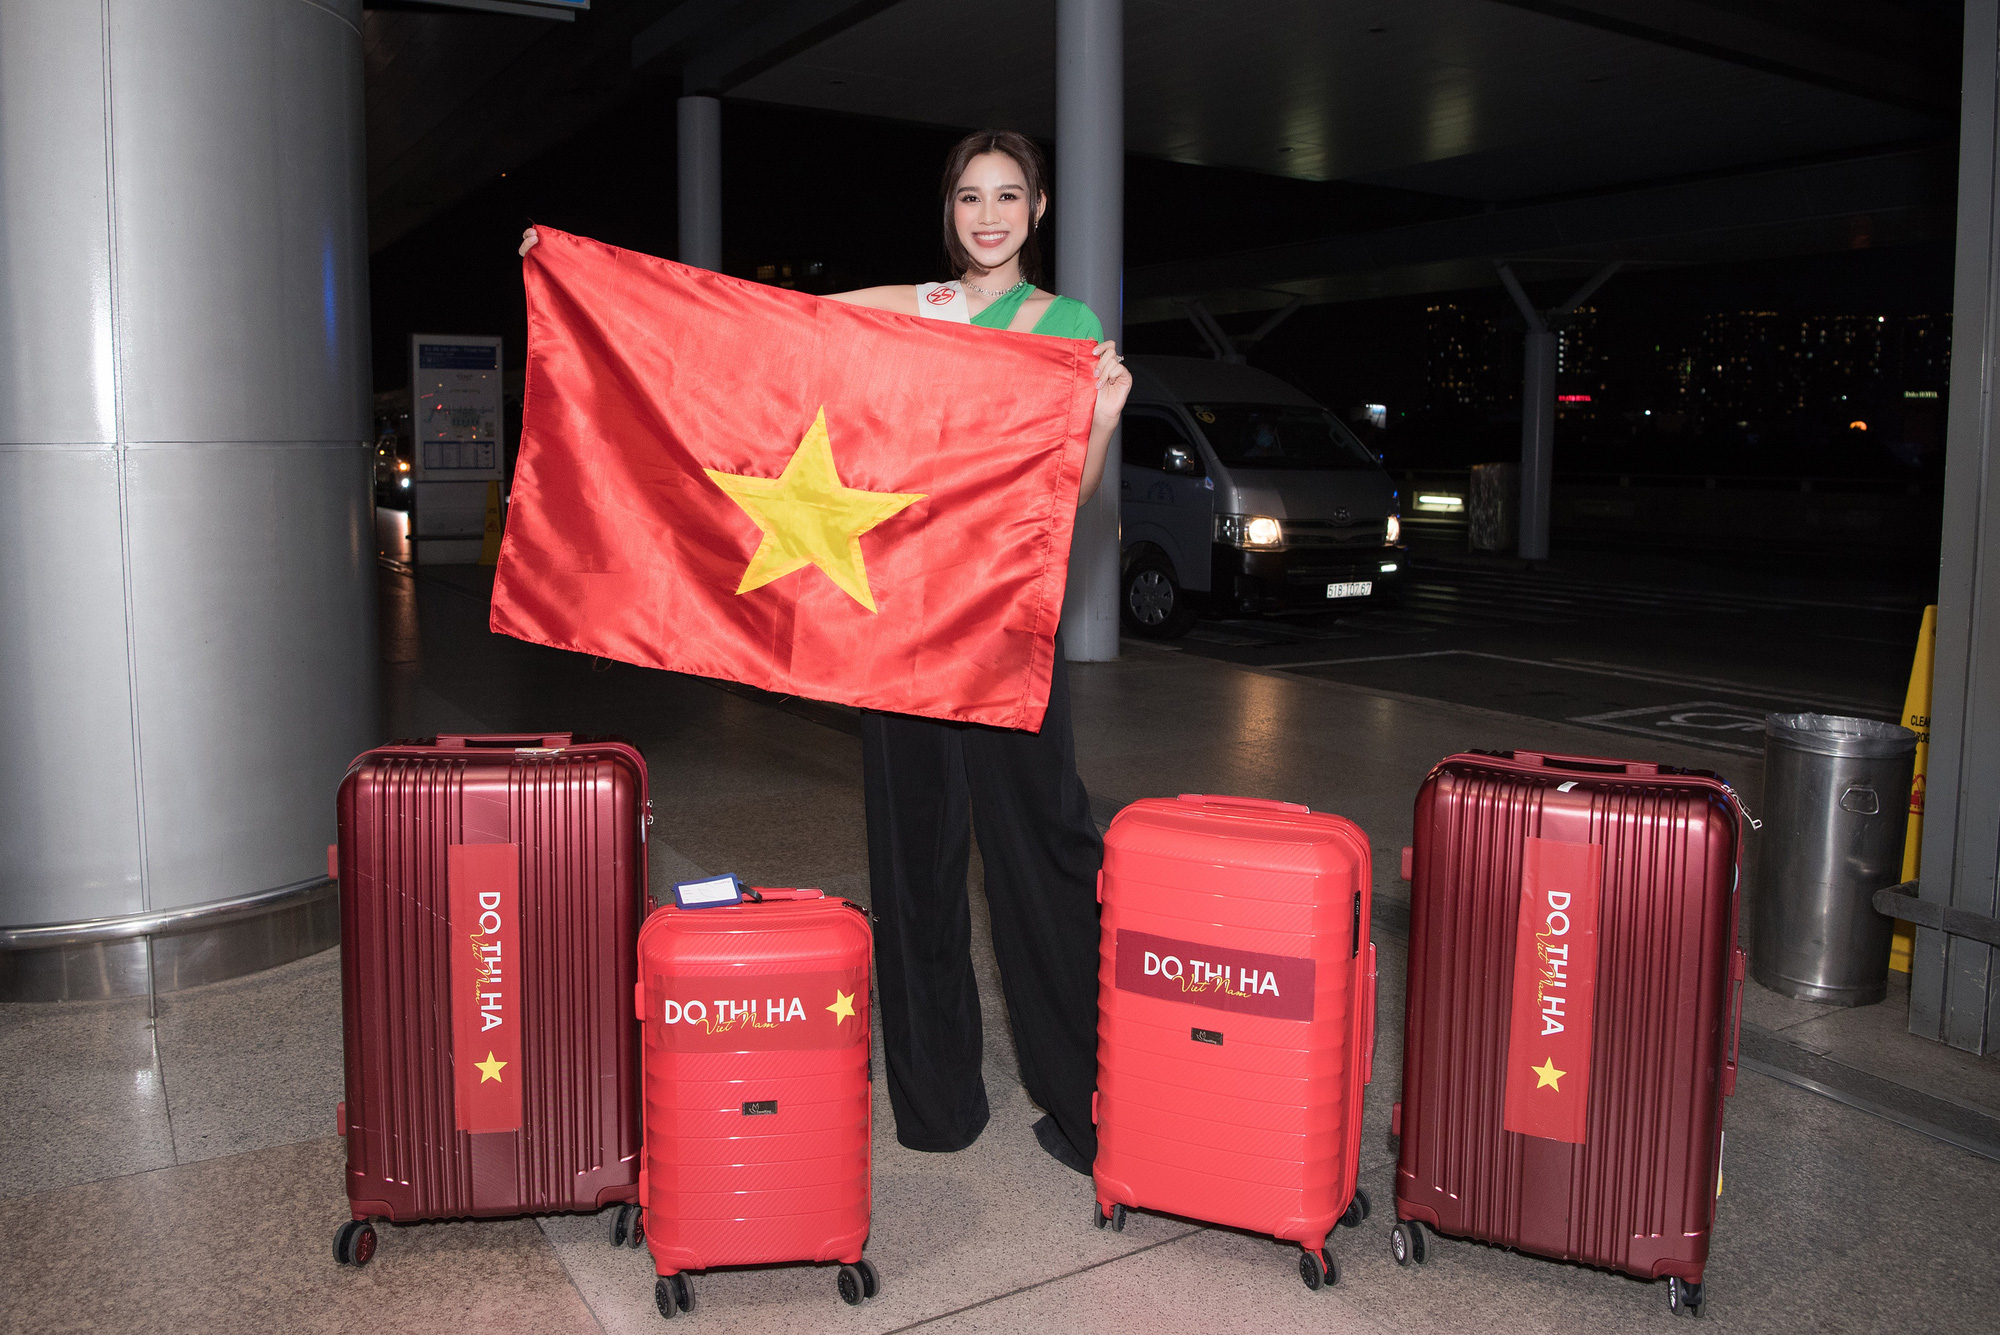 Hoa hậu Đỗ Thị Hà nhận &quot;bão&quot; lời chúc từ dàn sao Việt trước chung kết Miss World 2021 - Ảnh 3.